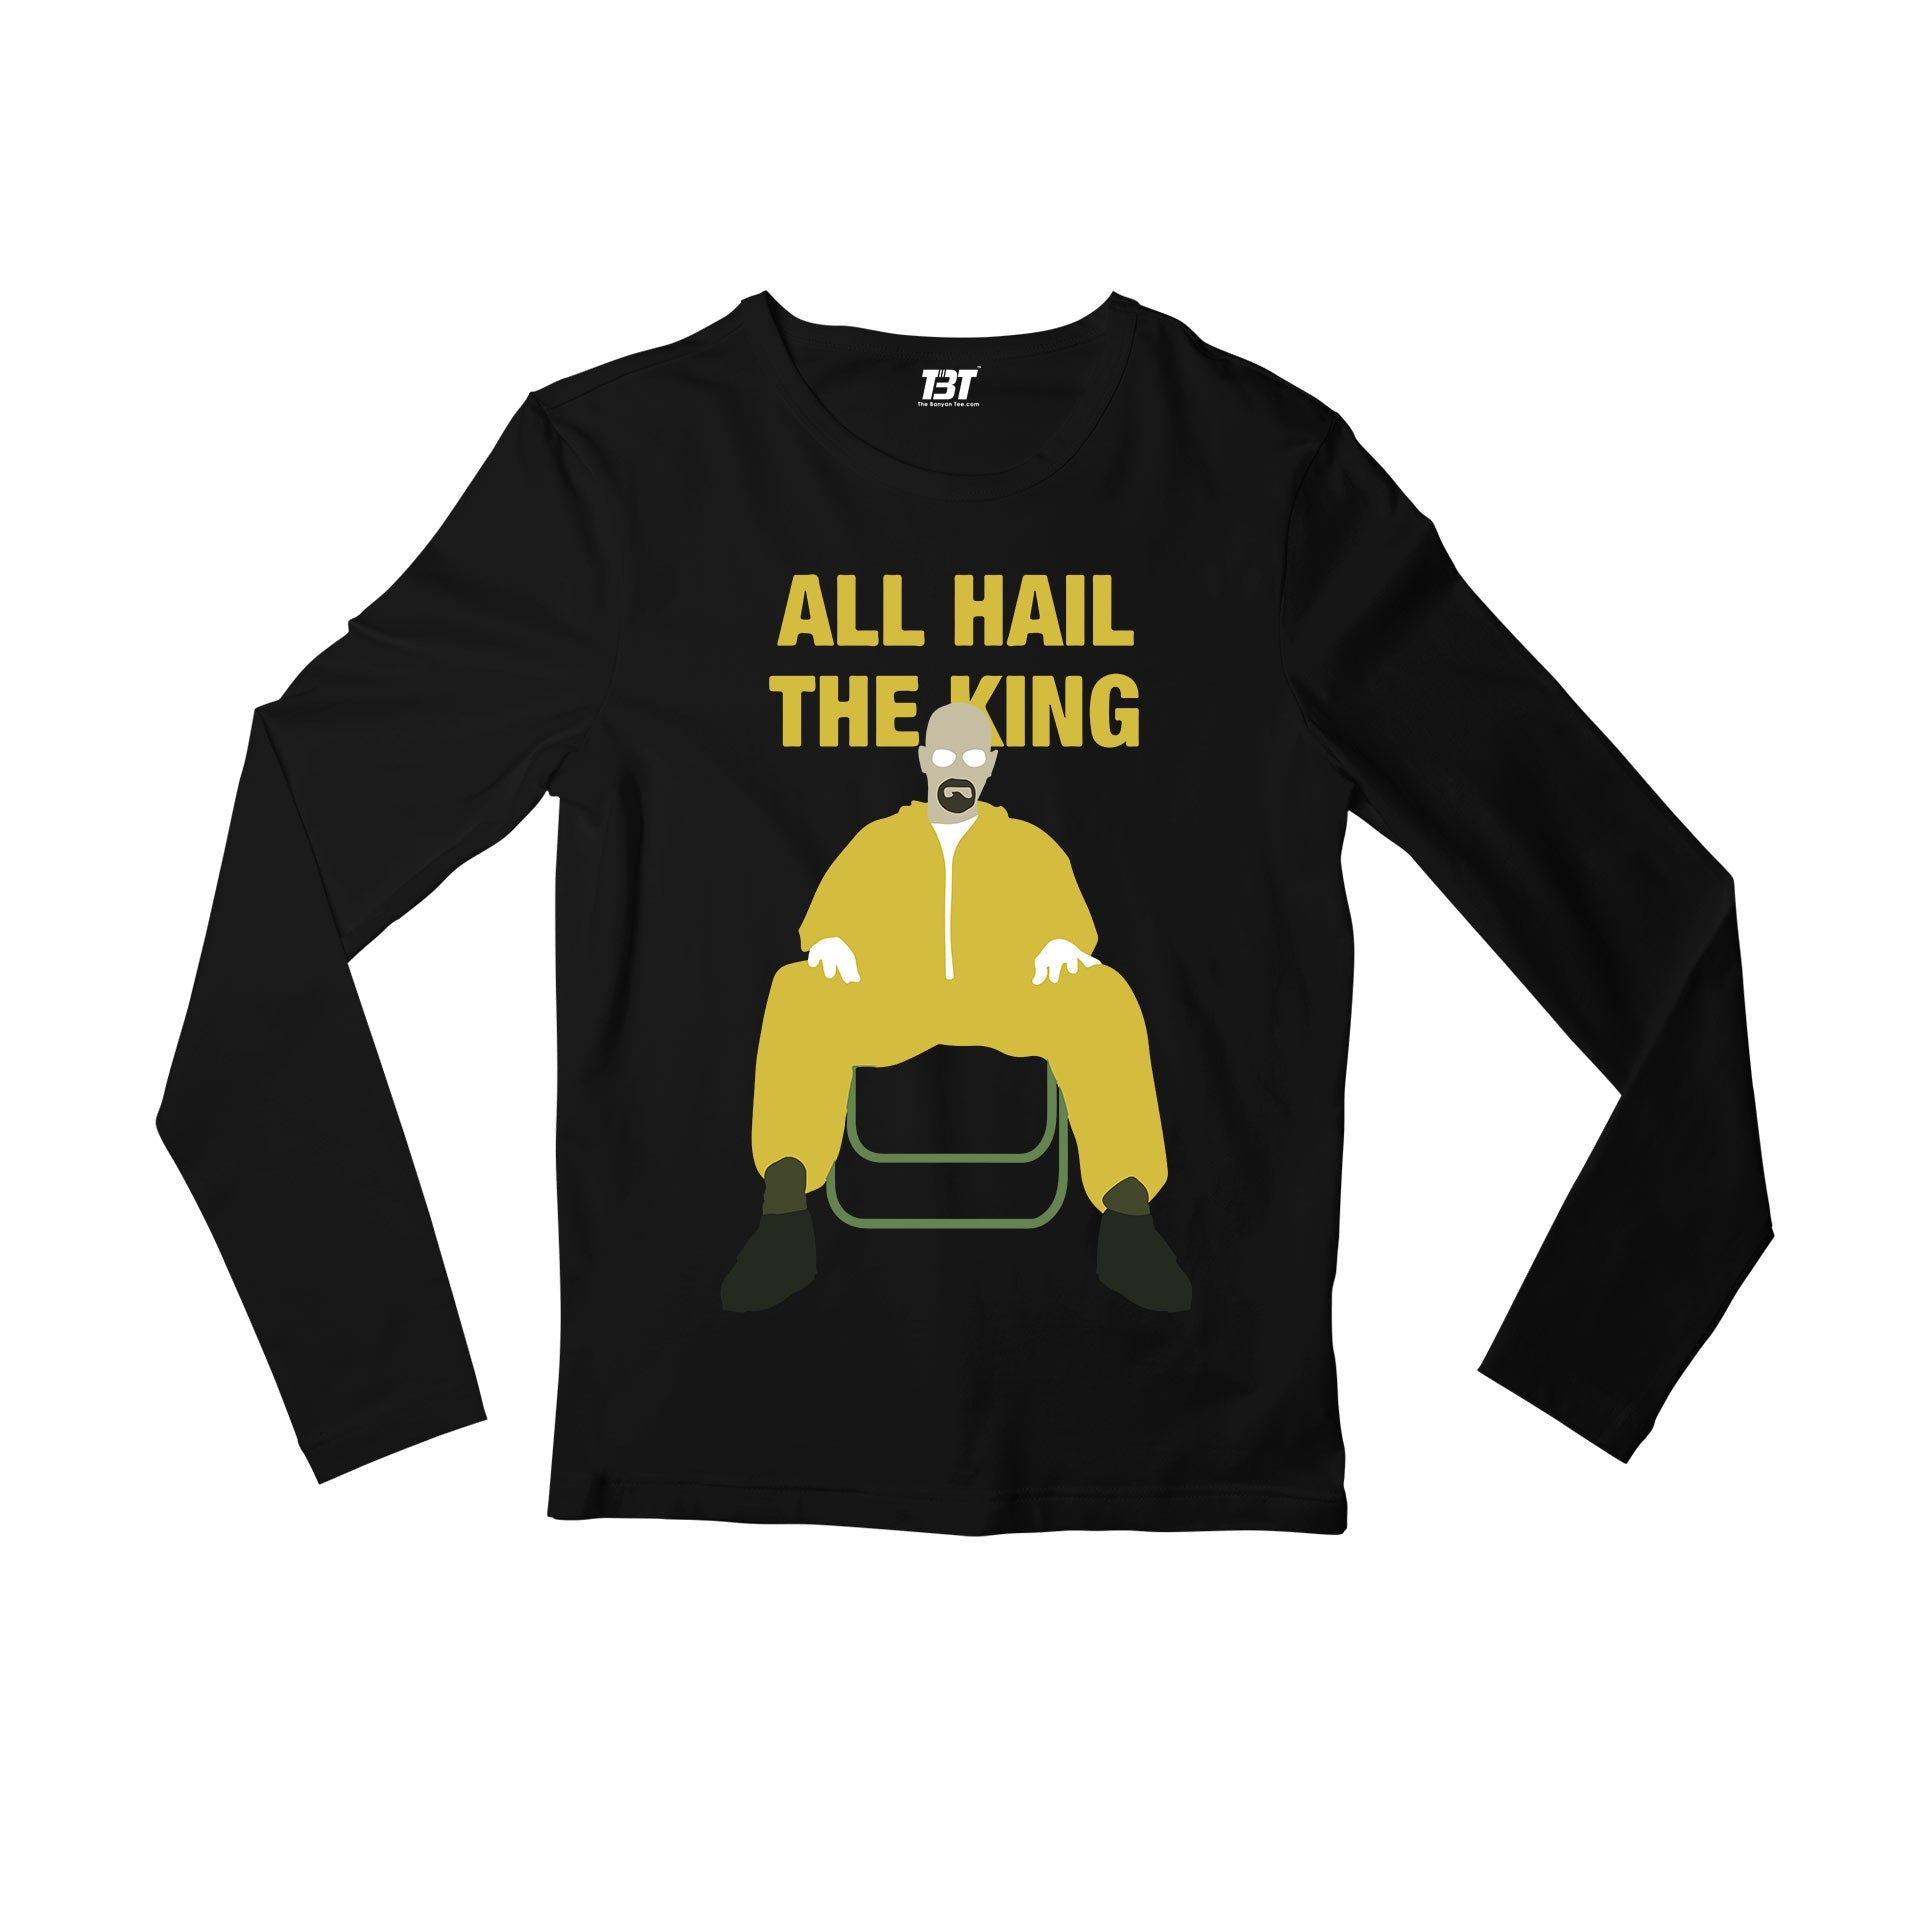 Breaking Bad Full Sleeves T-shirt - Walter White Full Sleeves T-shirt The Banyan Tee TBT